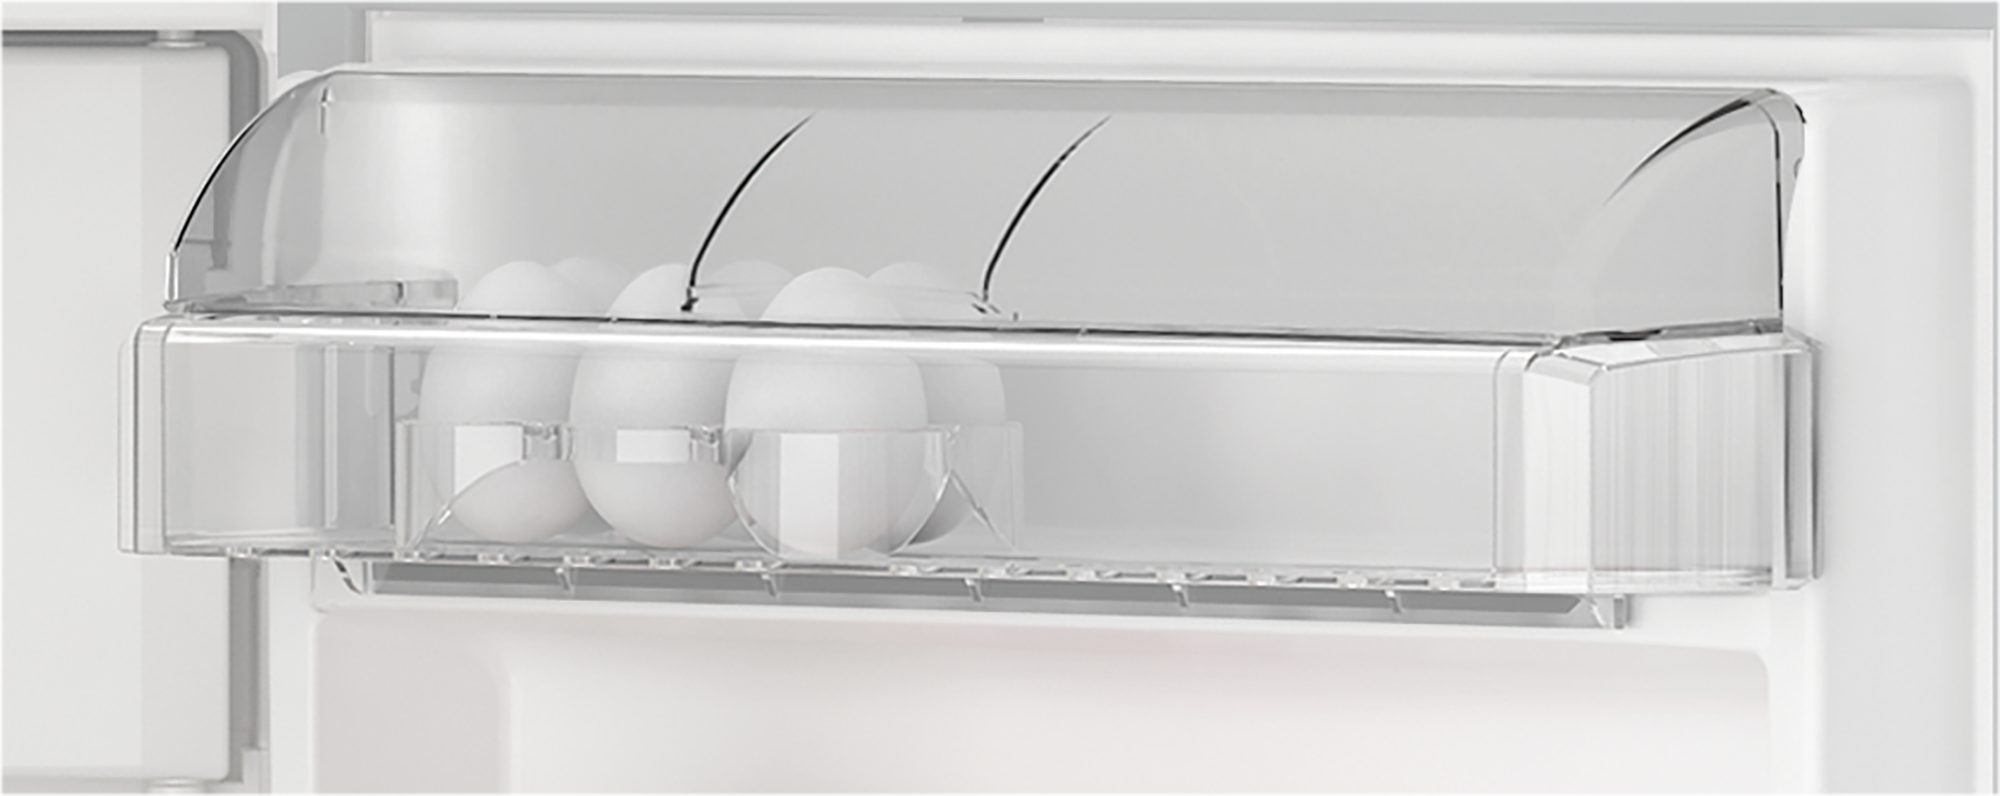 GTMI14141FN - | - jetzt Gefrieren Grundig Kühlschrank Kühlen | & kaufen